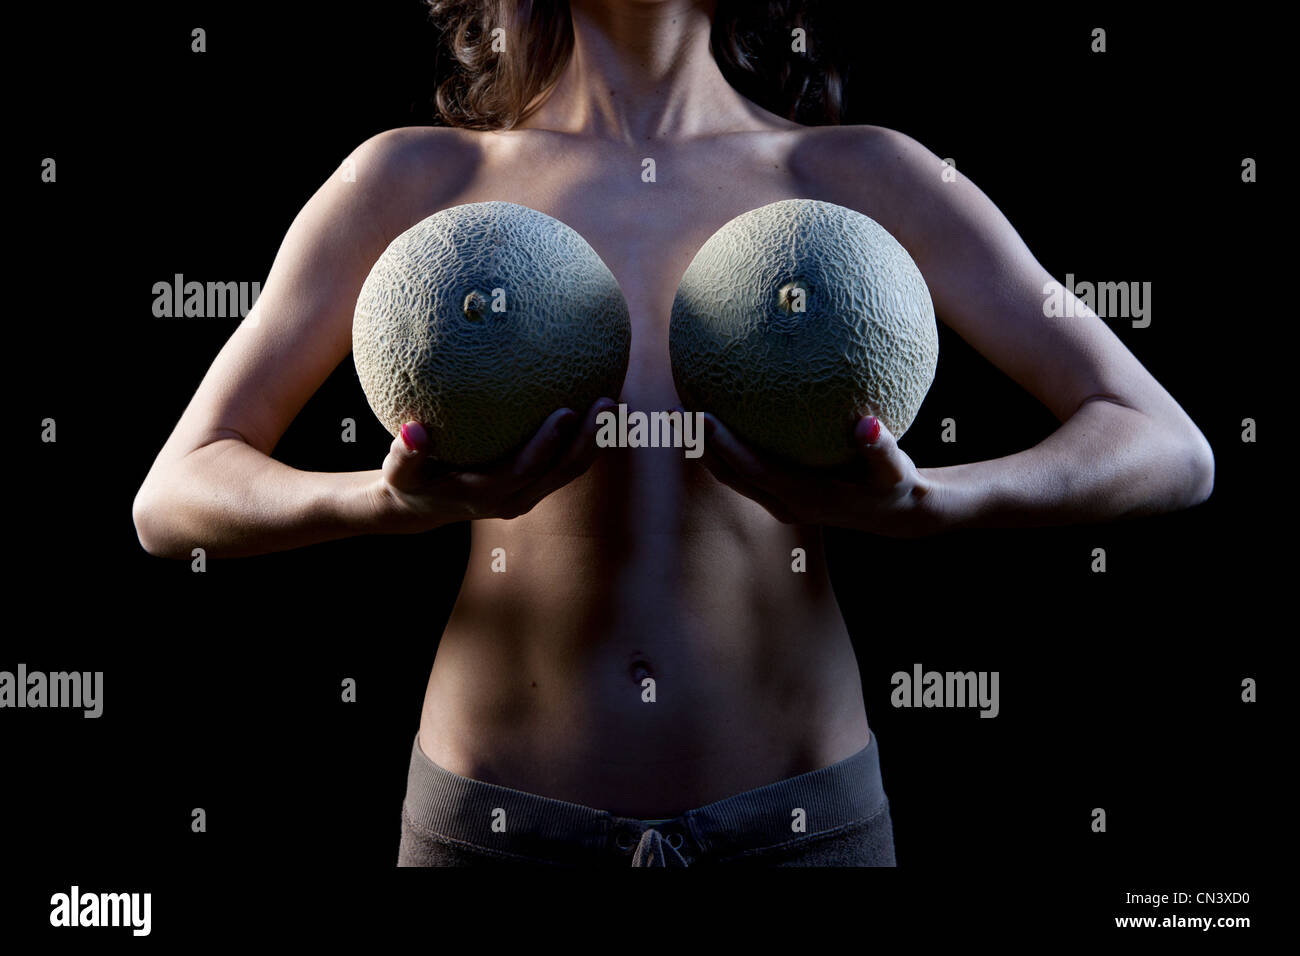 Melon boobs